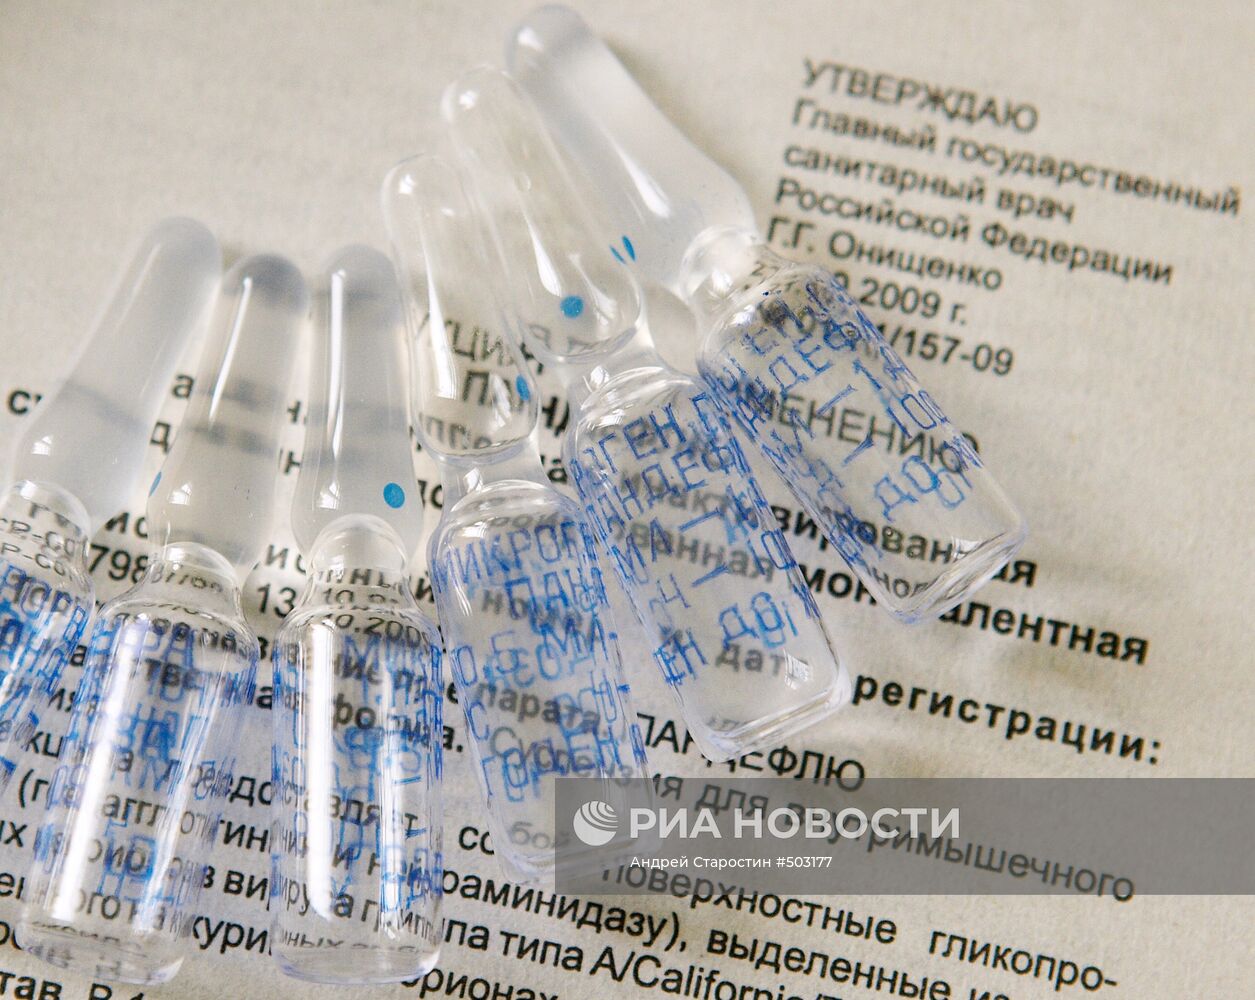 Вакцина против гриппа A/H1N1 - препарат "Пандефлю"